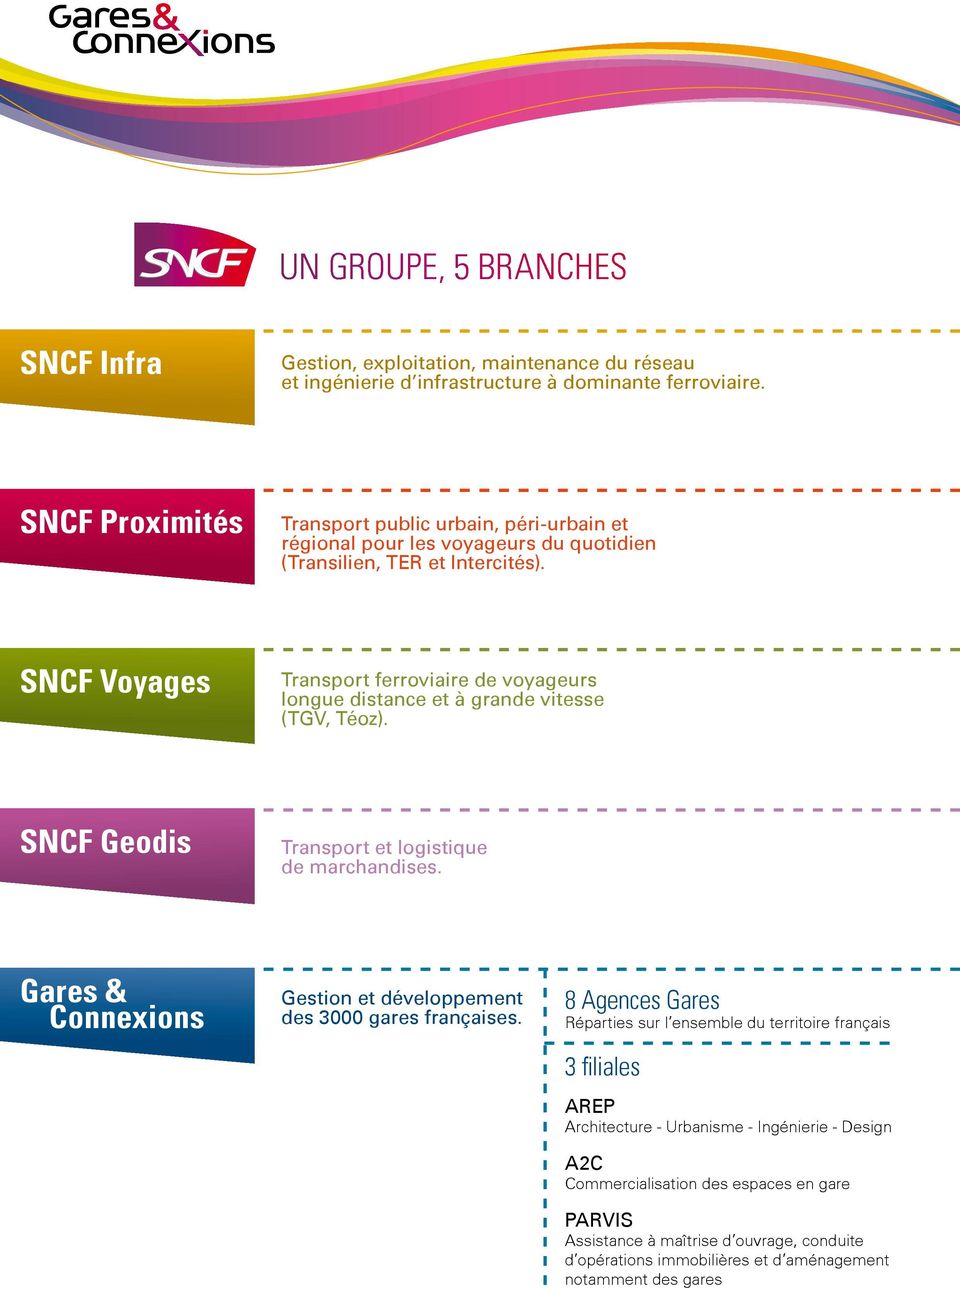 SNCF Voyages Transport ferroviaire de voyageurs longue distance et à grande vitesse (TGV, Téoz). SNCF Geodis Transport et logistique de marchandises.